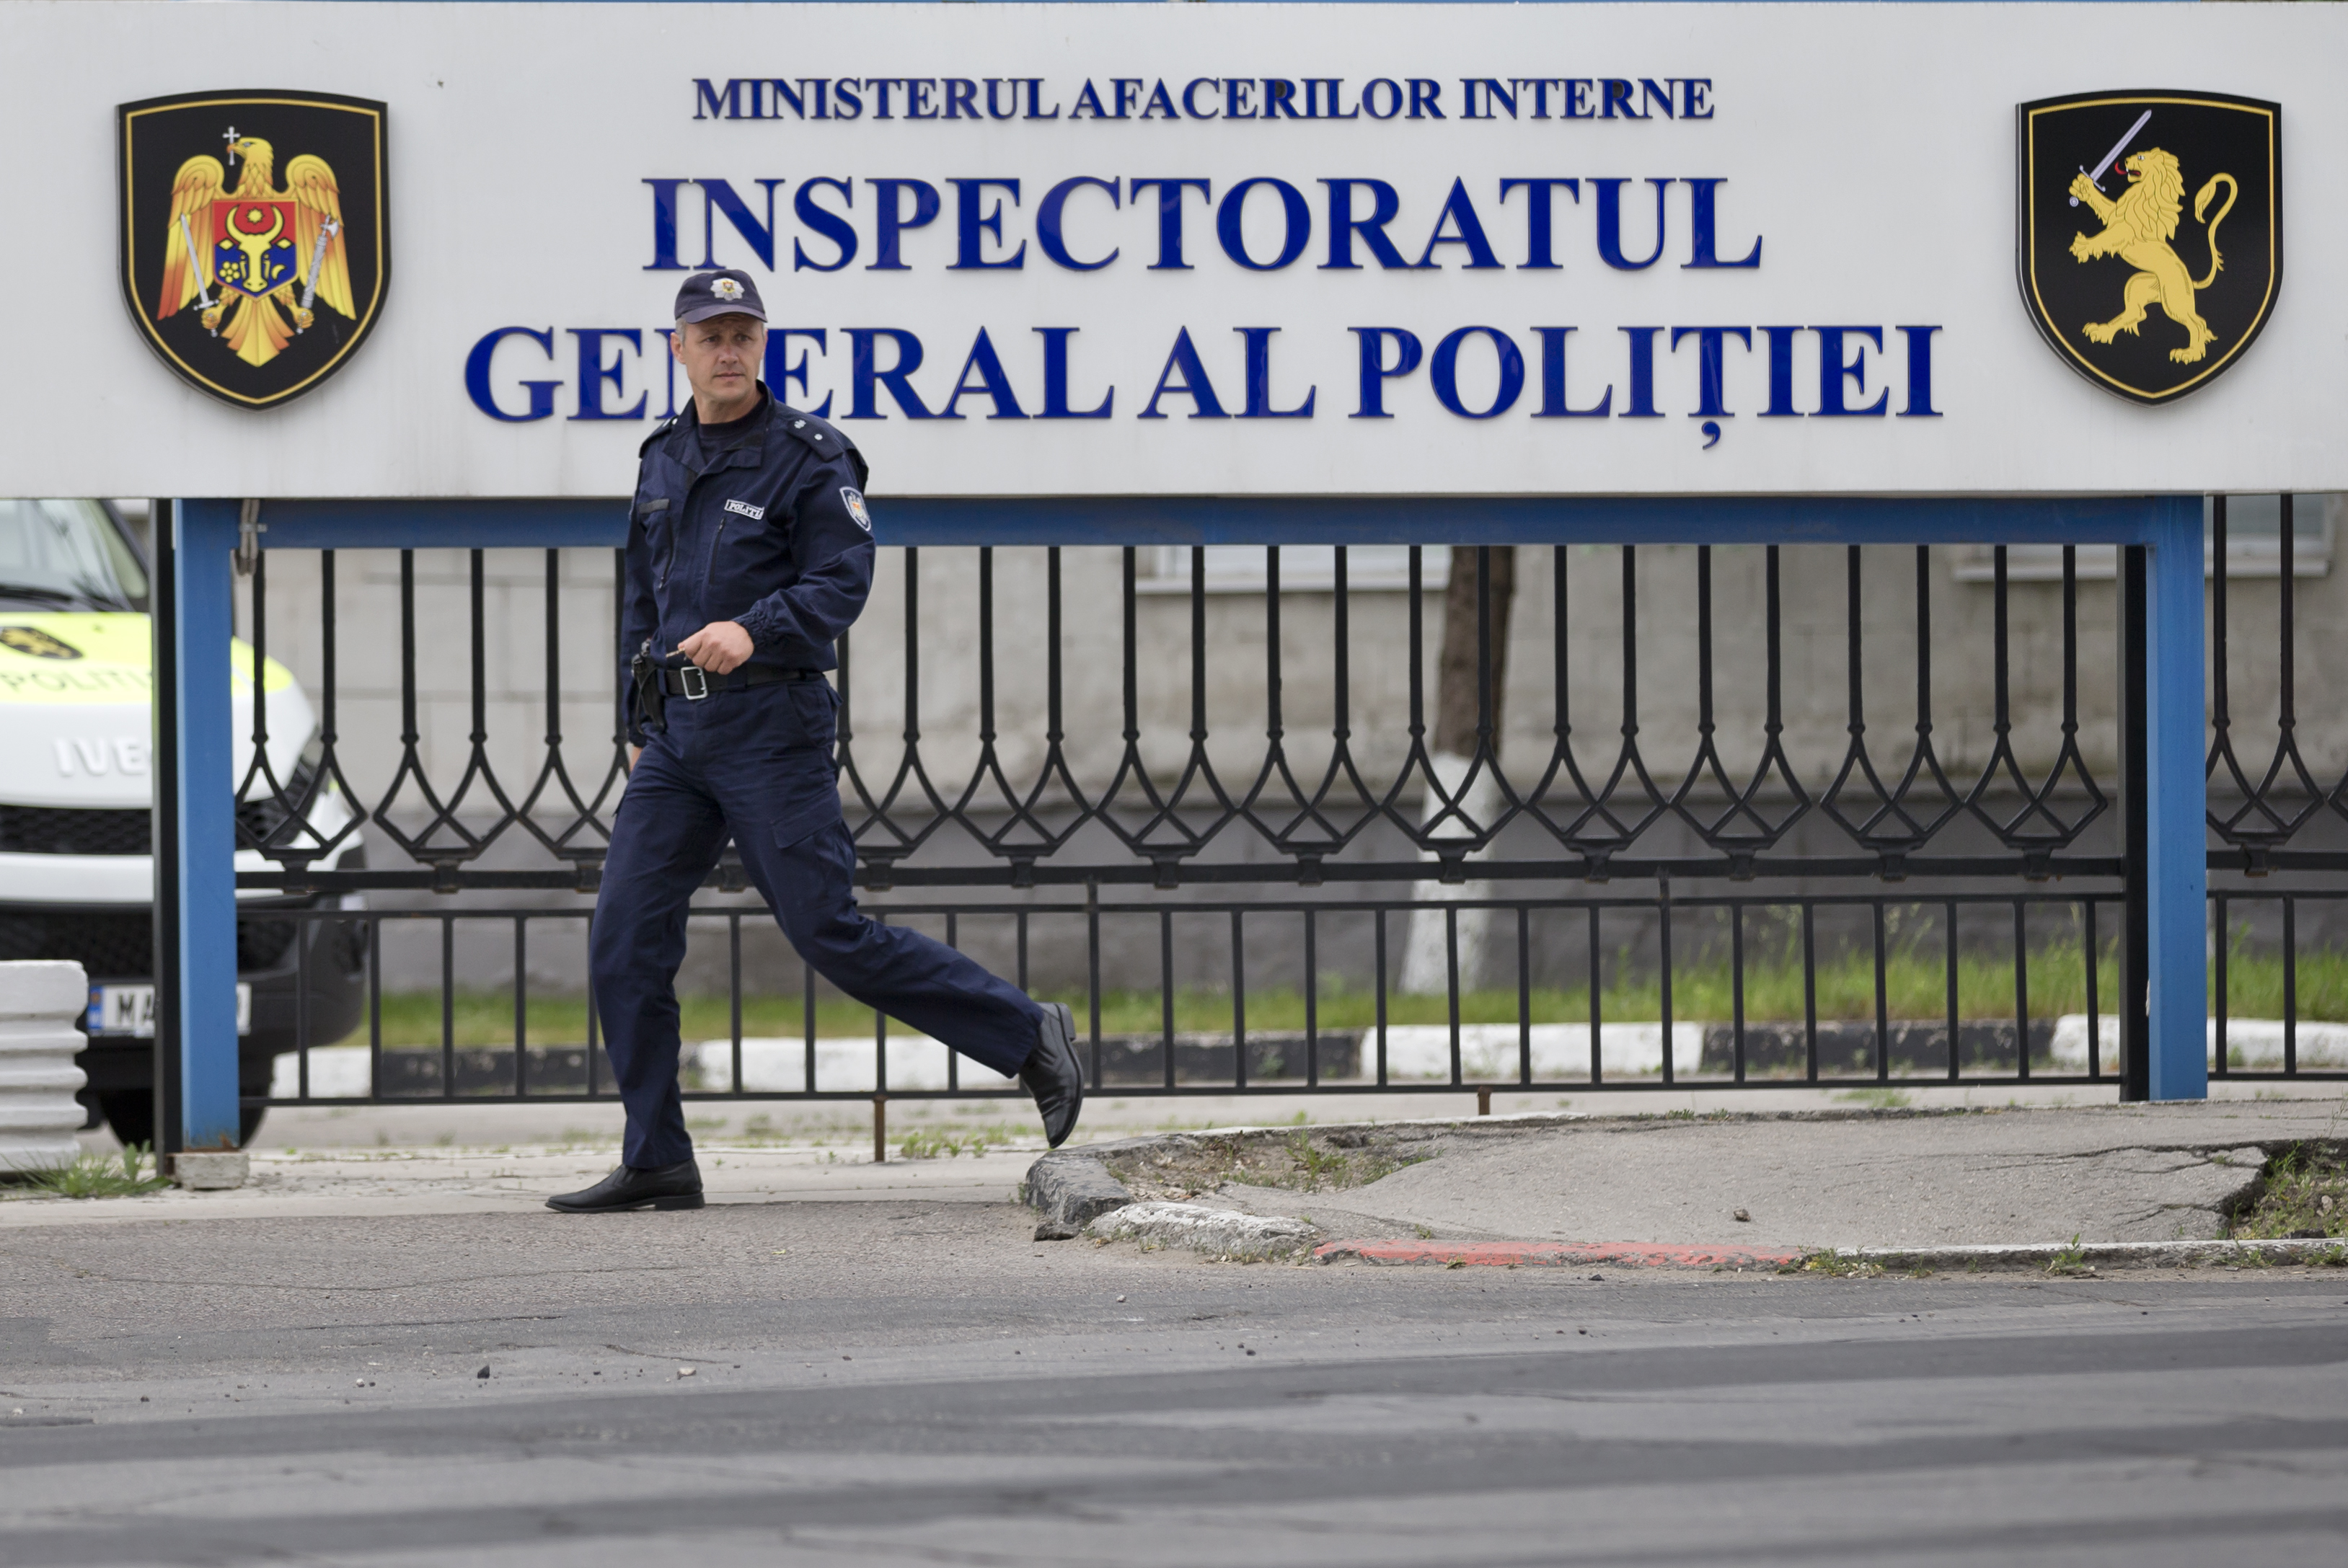 Sede della polizia nazionale, Chisinau, Moldova (AP Photo/Vadim Ghirda)